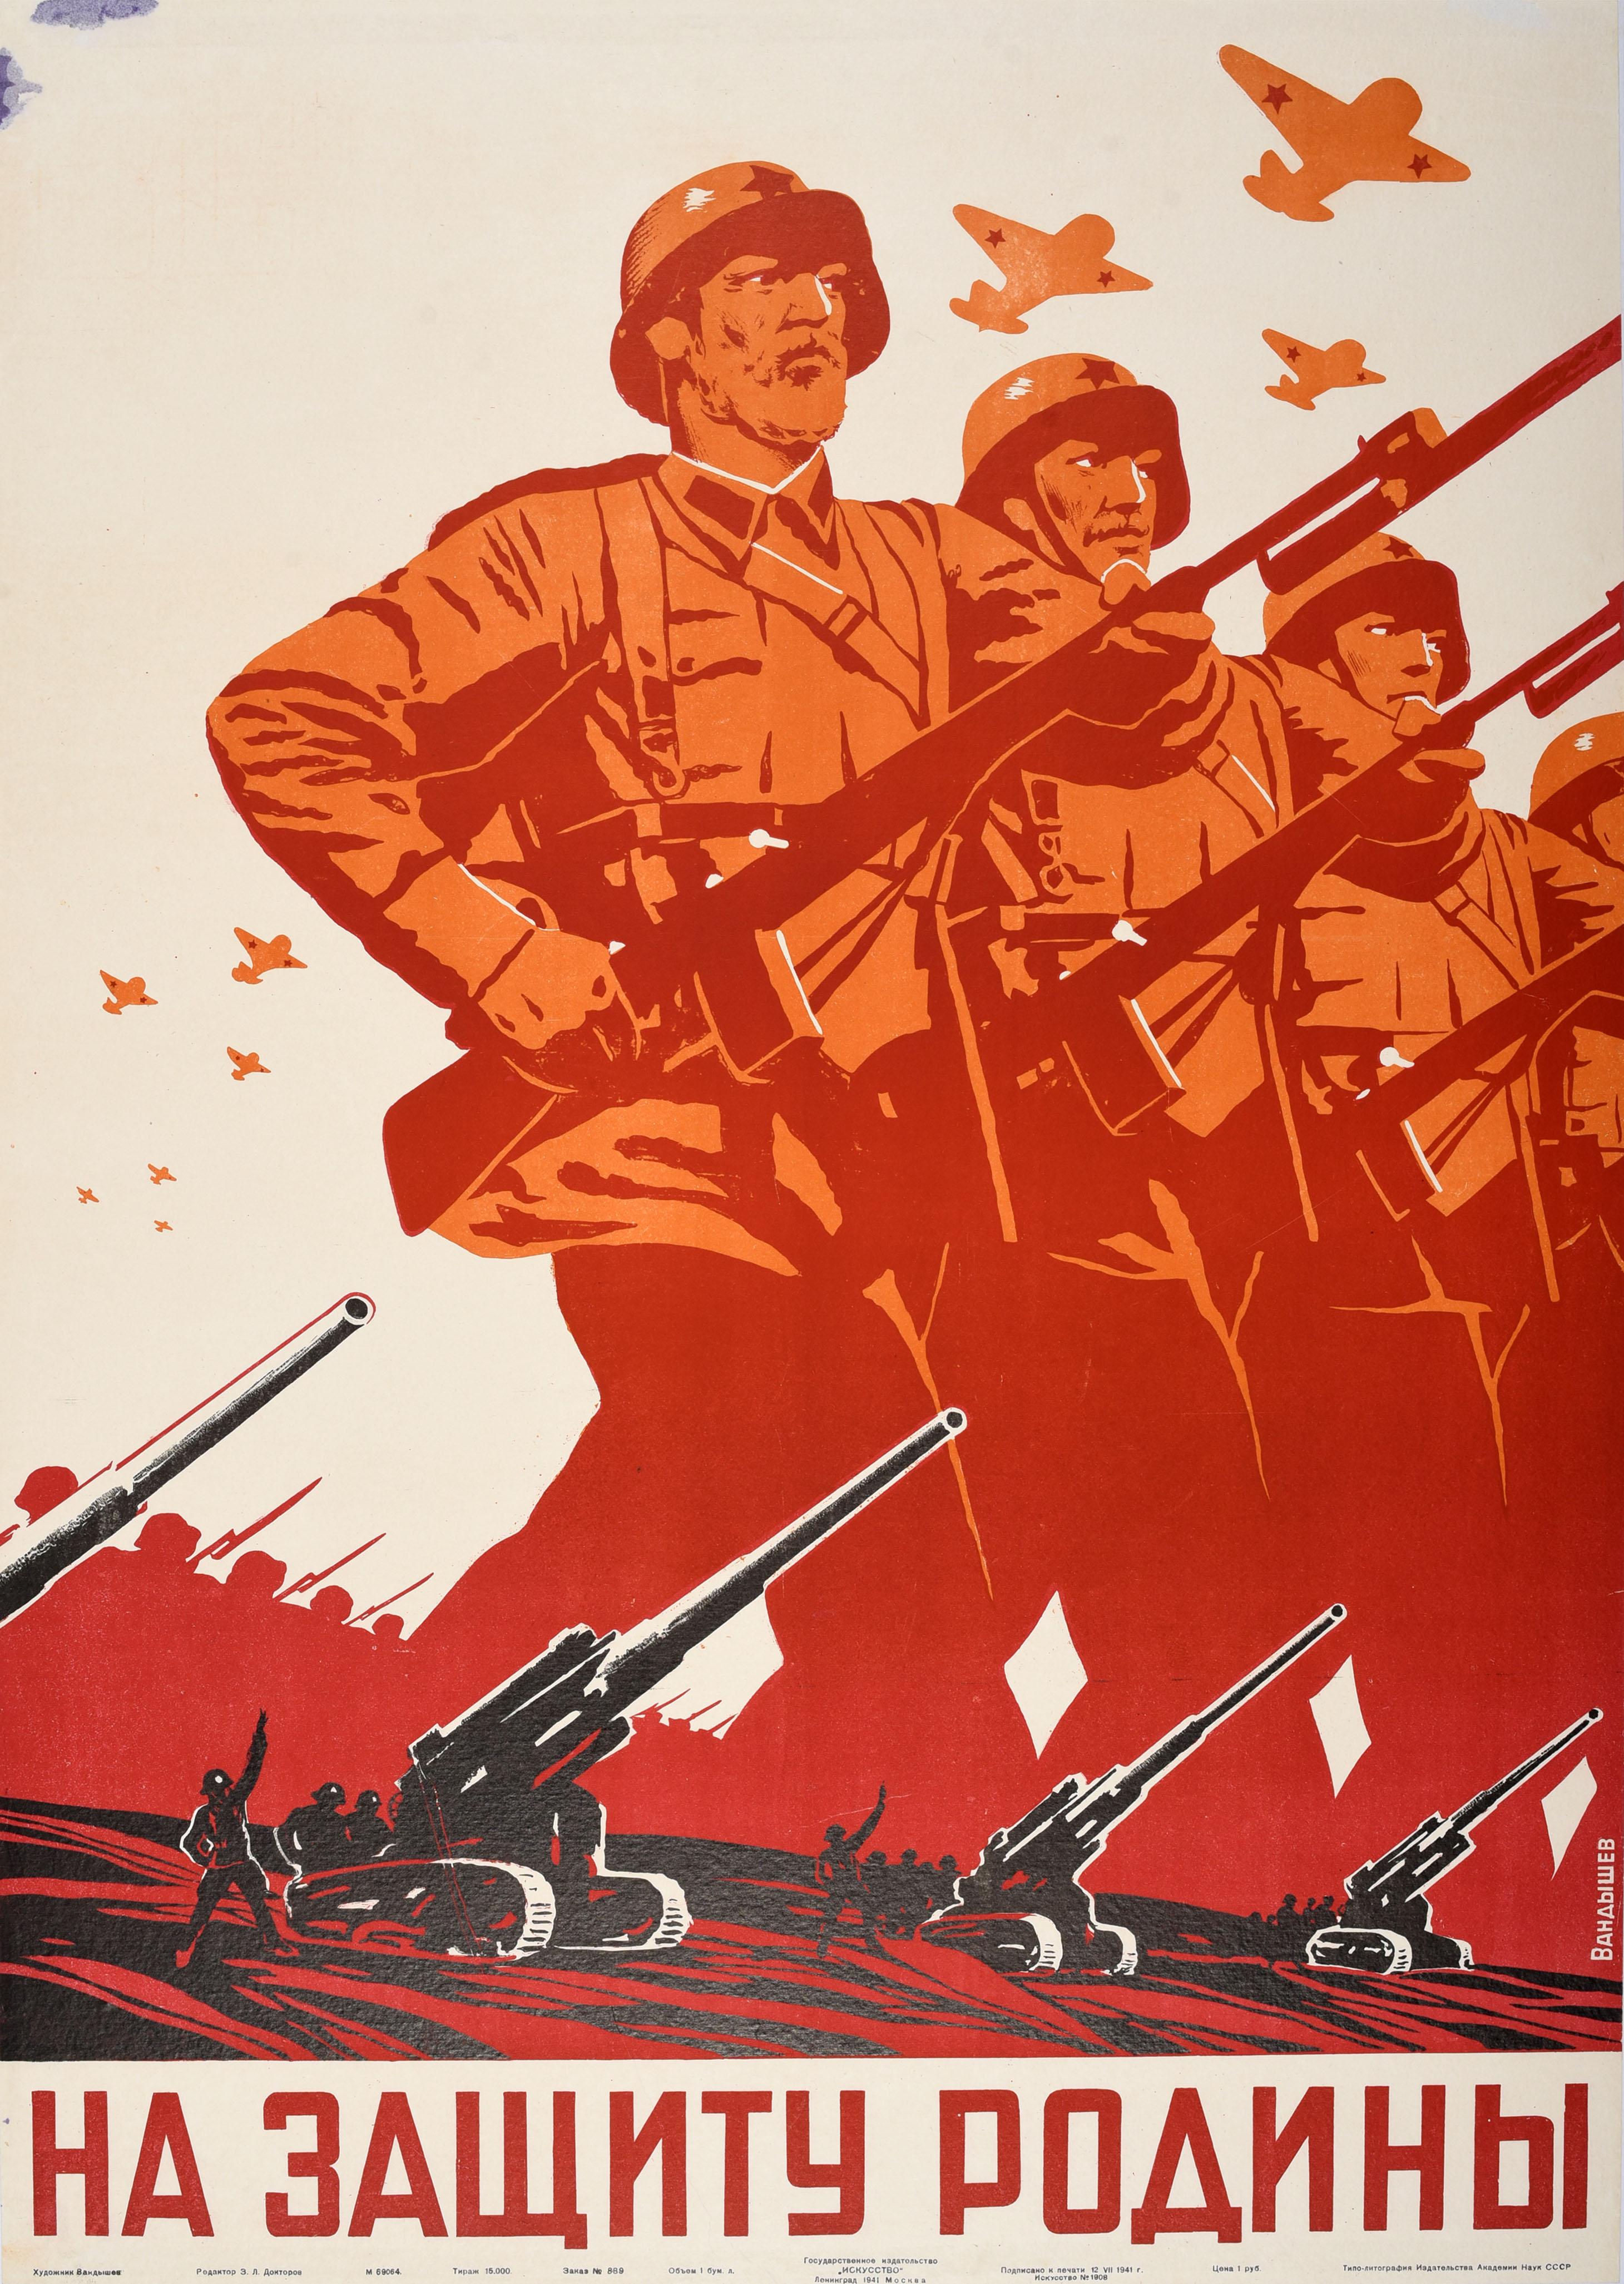 Unknown Print – Originales sowjetisches Propagandaplakat aus dem Zweiten Weltkrieg zur Verteidigung des Mutterlandes UdSSR, Vintage